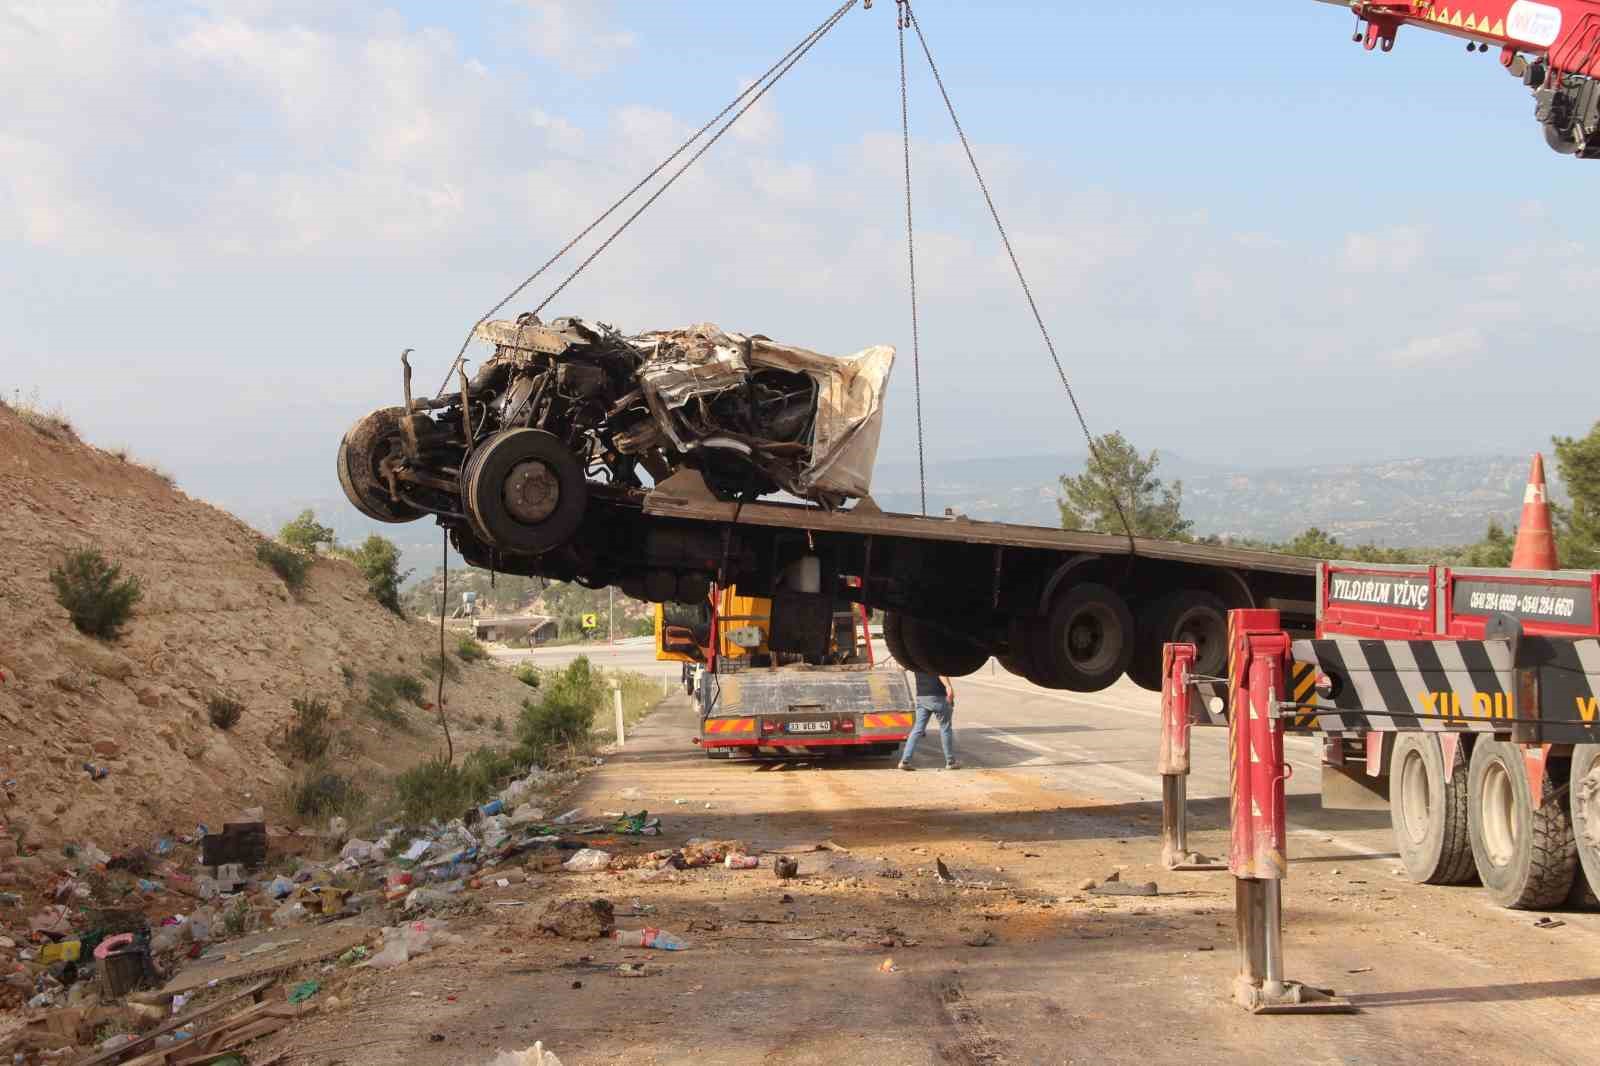 Ölüm virajında kamyon hurdaya döndü, sürücü hayatını kaybetti
